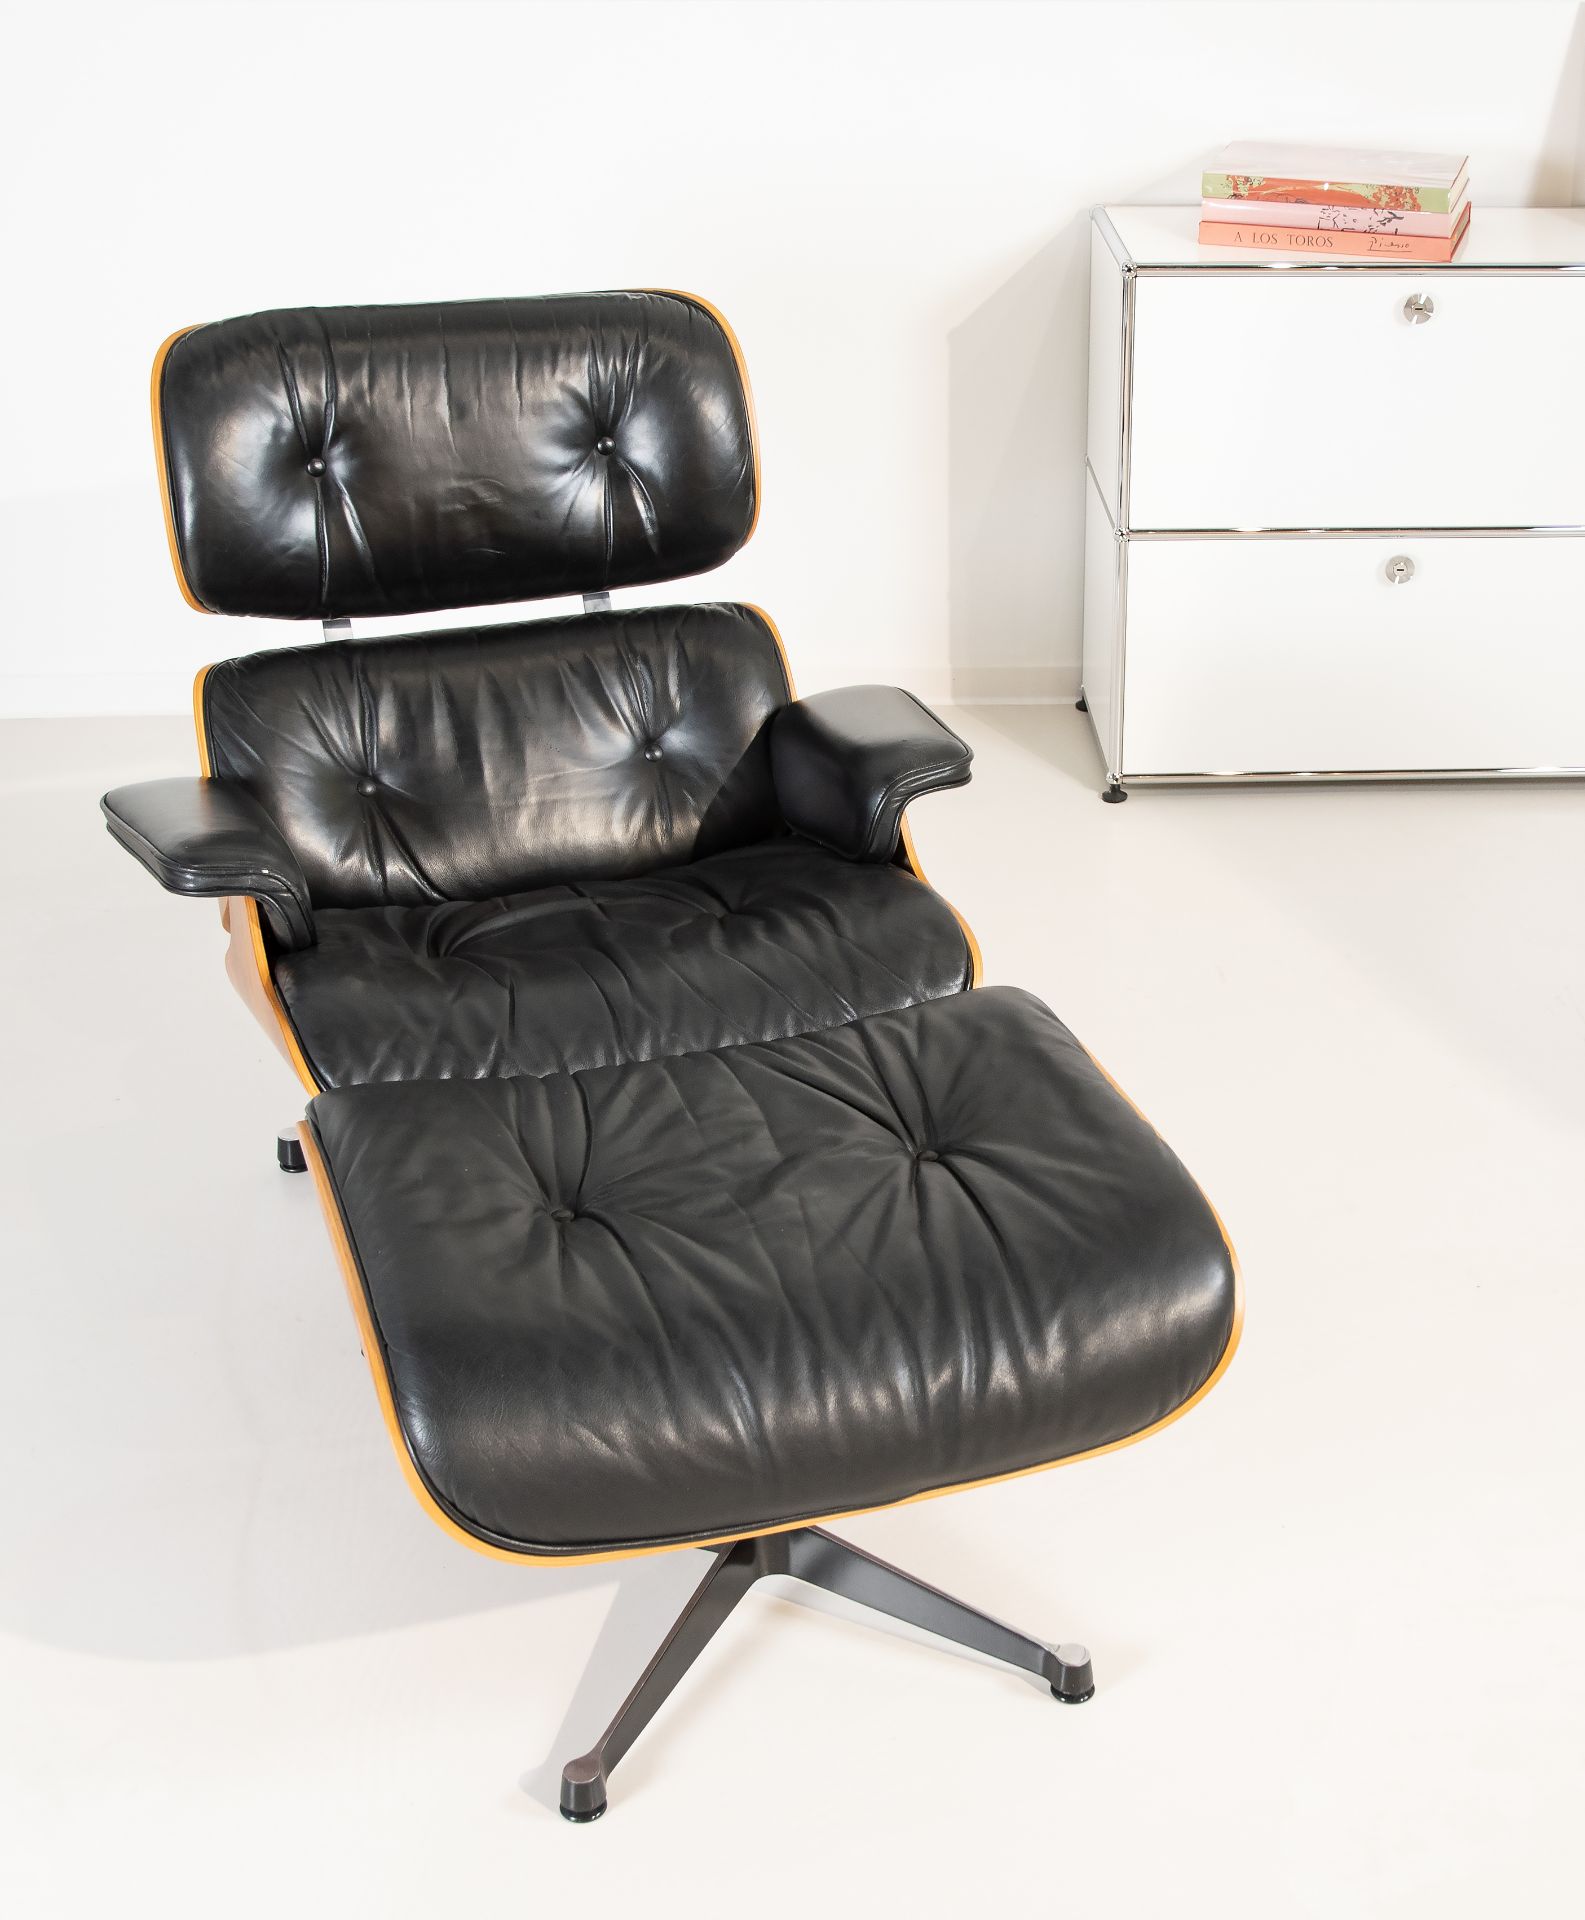 'Lounge Chair & Ottoman', Entwurf von Charles Eames (1907-1978) und Ray Eames (1912-1988) - Bild 5 aus 5